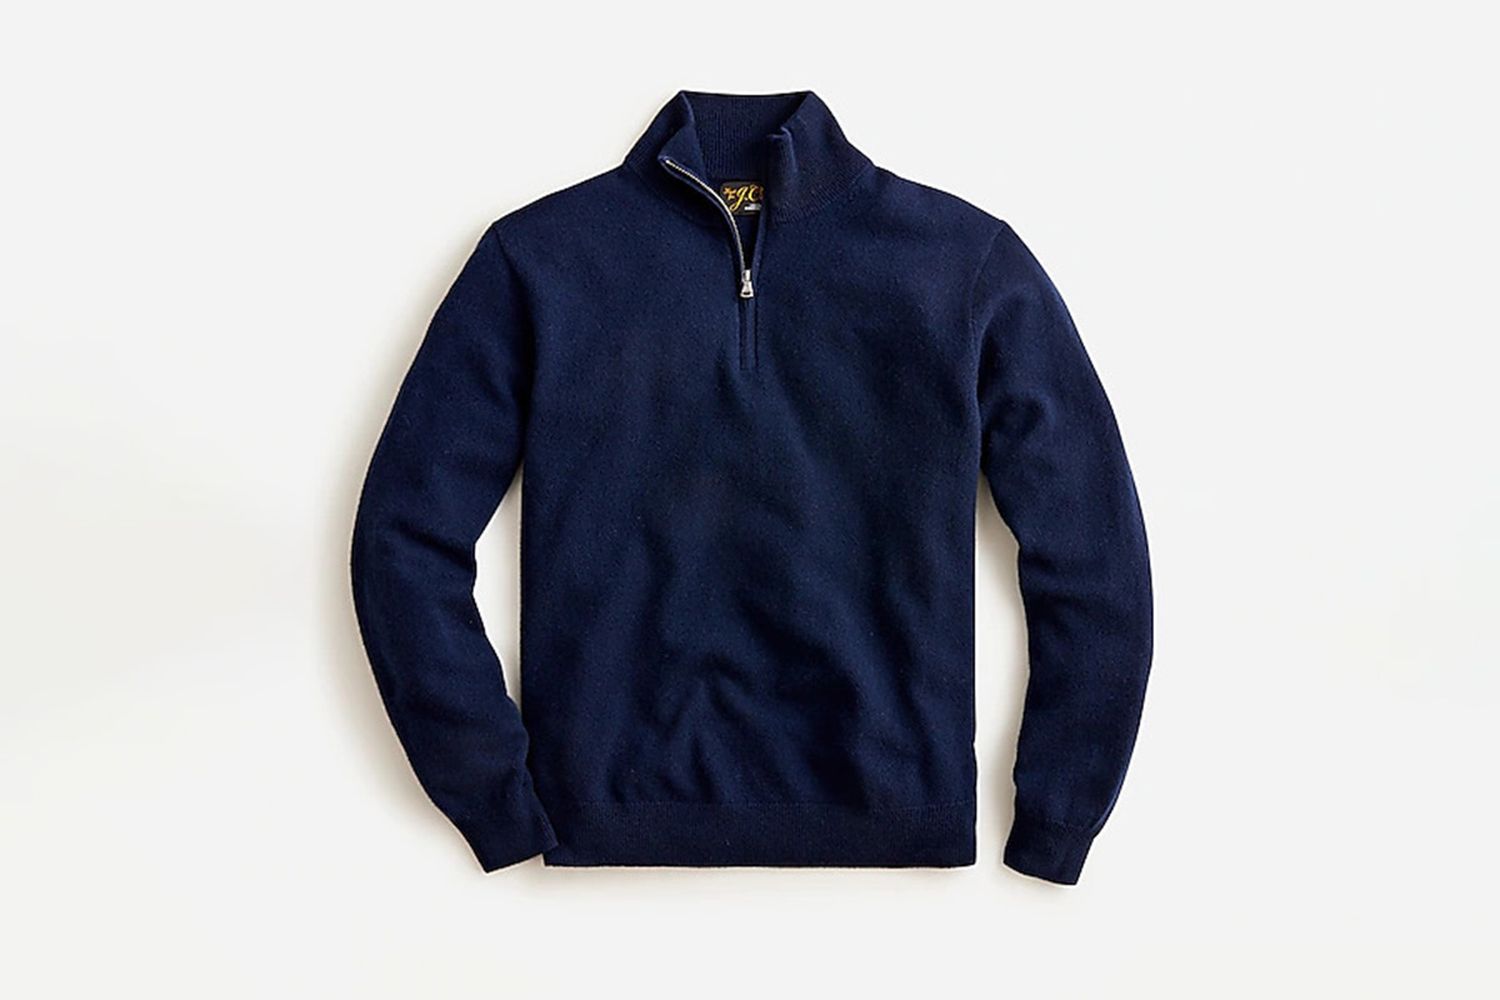 Best Half-Zip Sweaters for Spring 2023